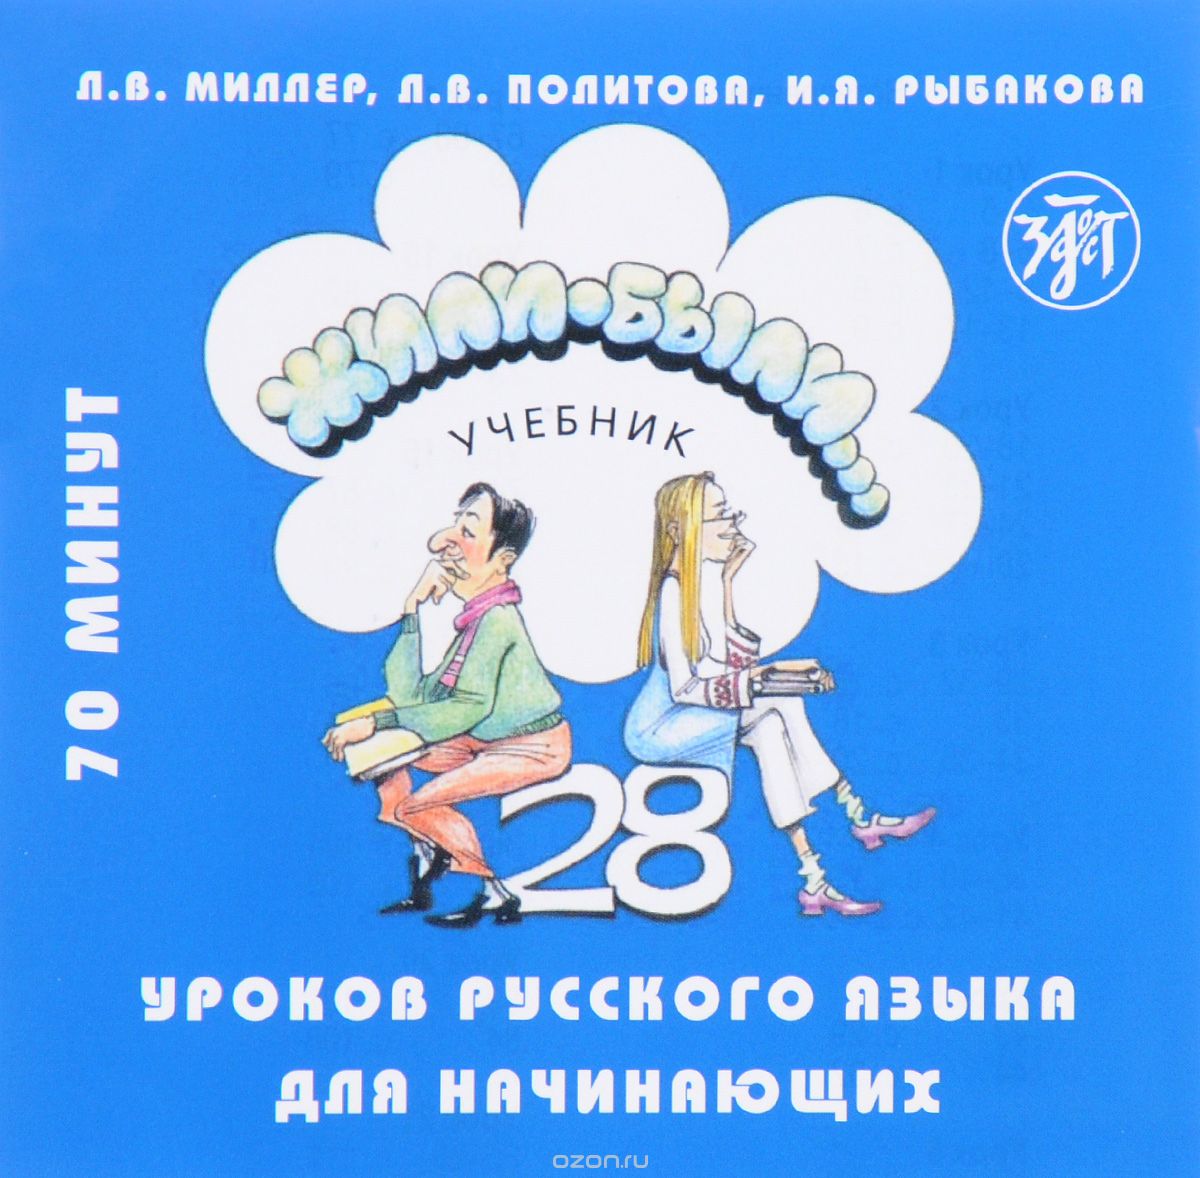 Скачать книгу "Жили-были... 28 уроков русского языка для начинающих. Учебник (аудиокурс на CD)"